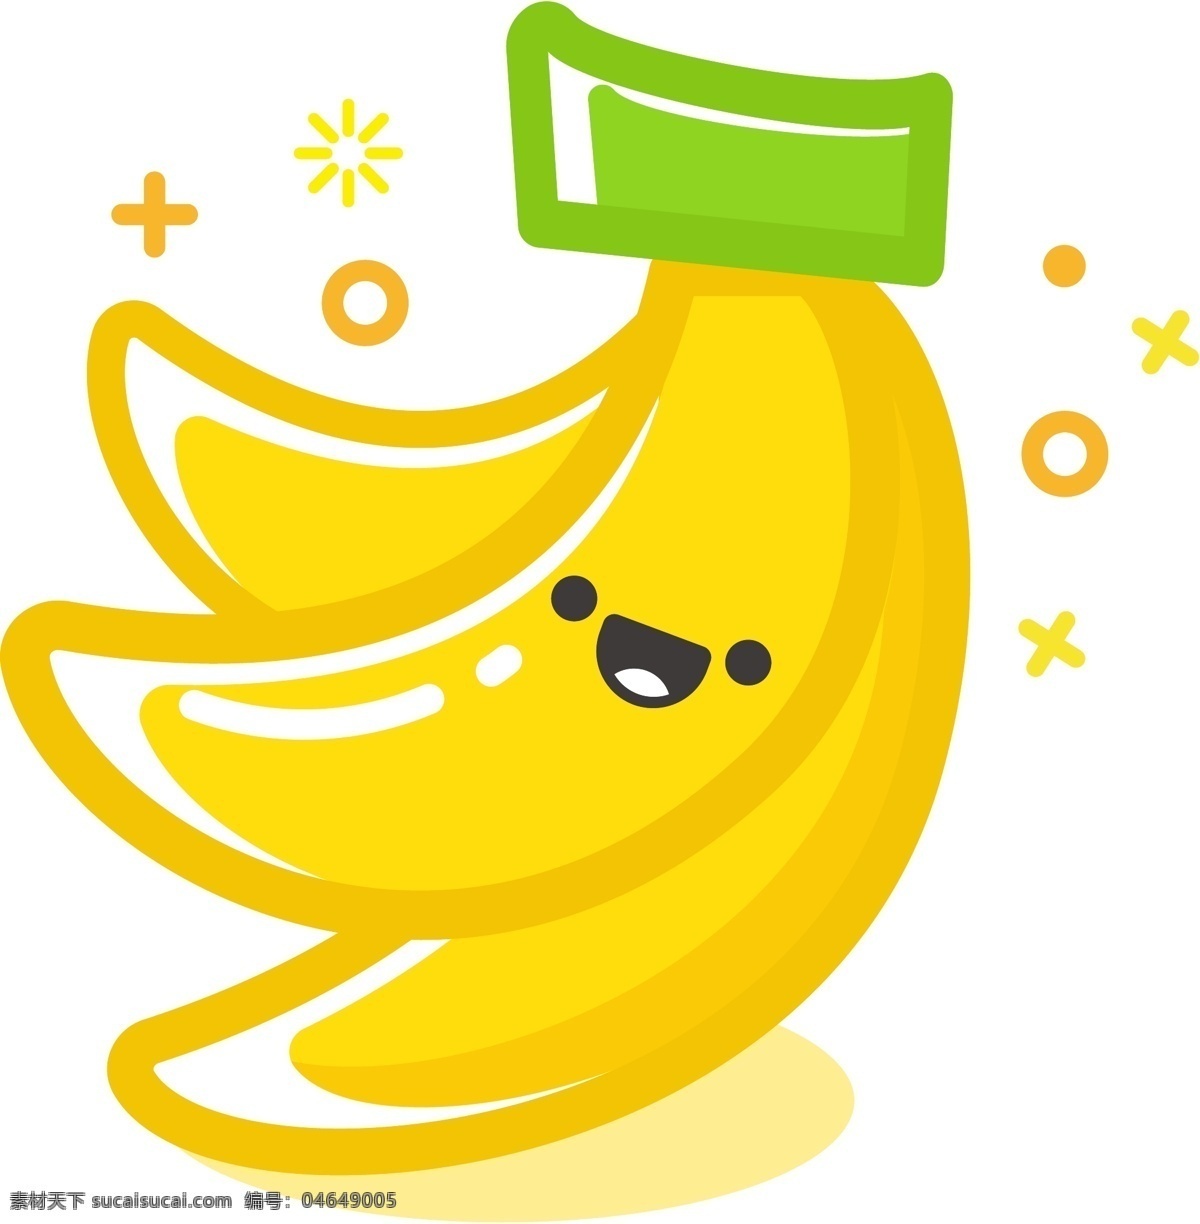 香蕉卡通 香蕉 矢量香蕉 卡通香蕉 水果 卡通水果 水果图案 矢量水果 卡通图案